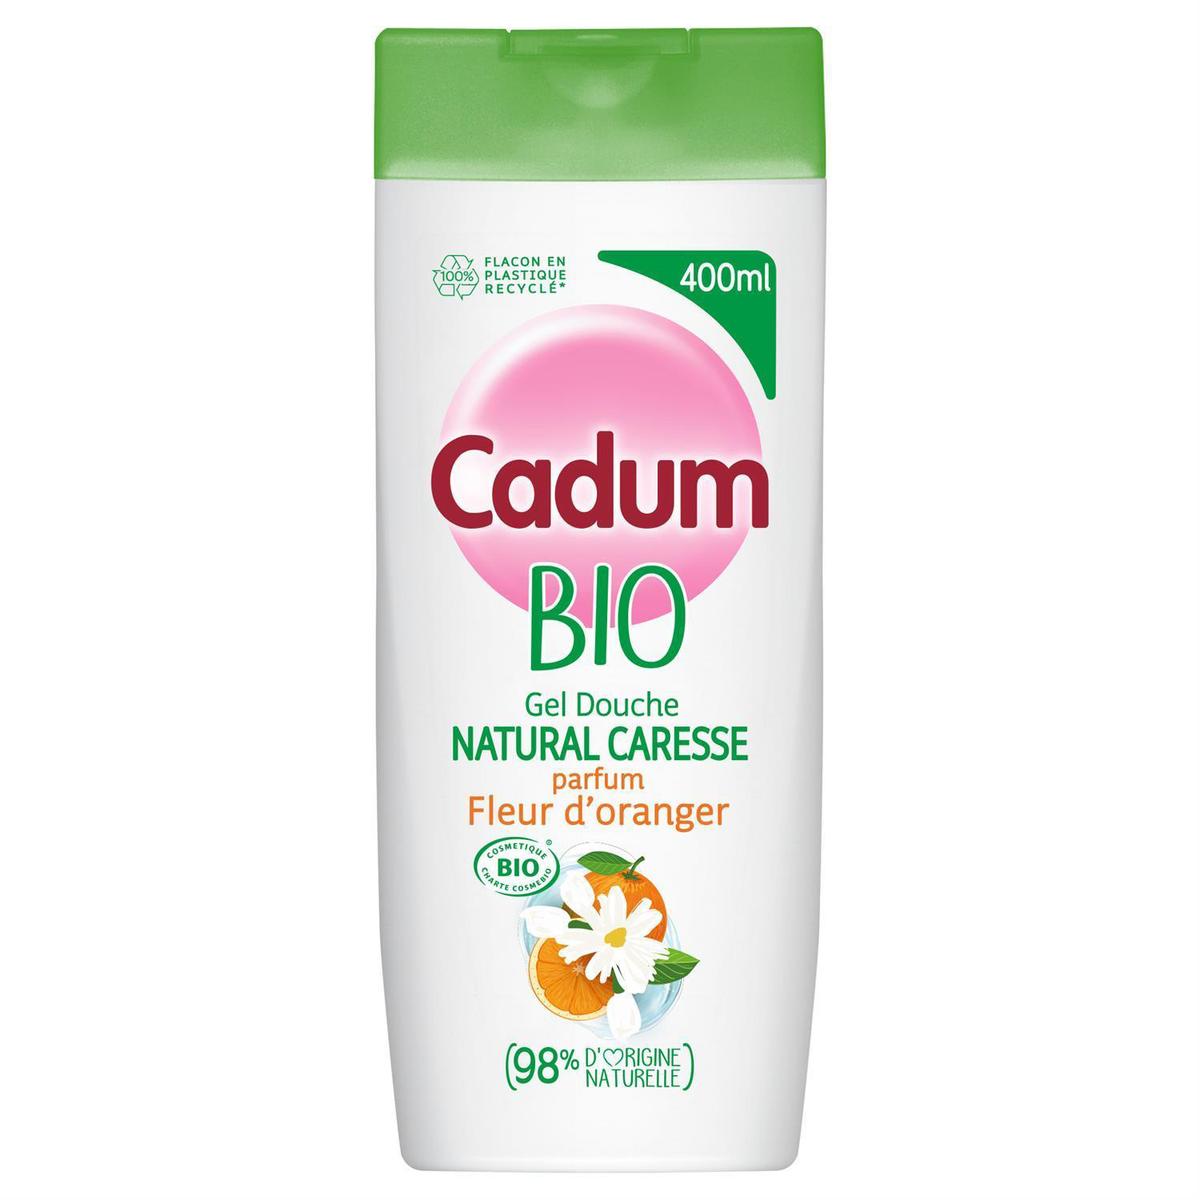 Cadum - Crème Douche Surgras au Beurre de karité - 400 ml